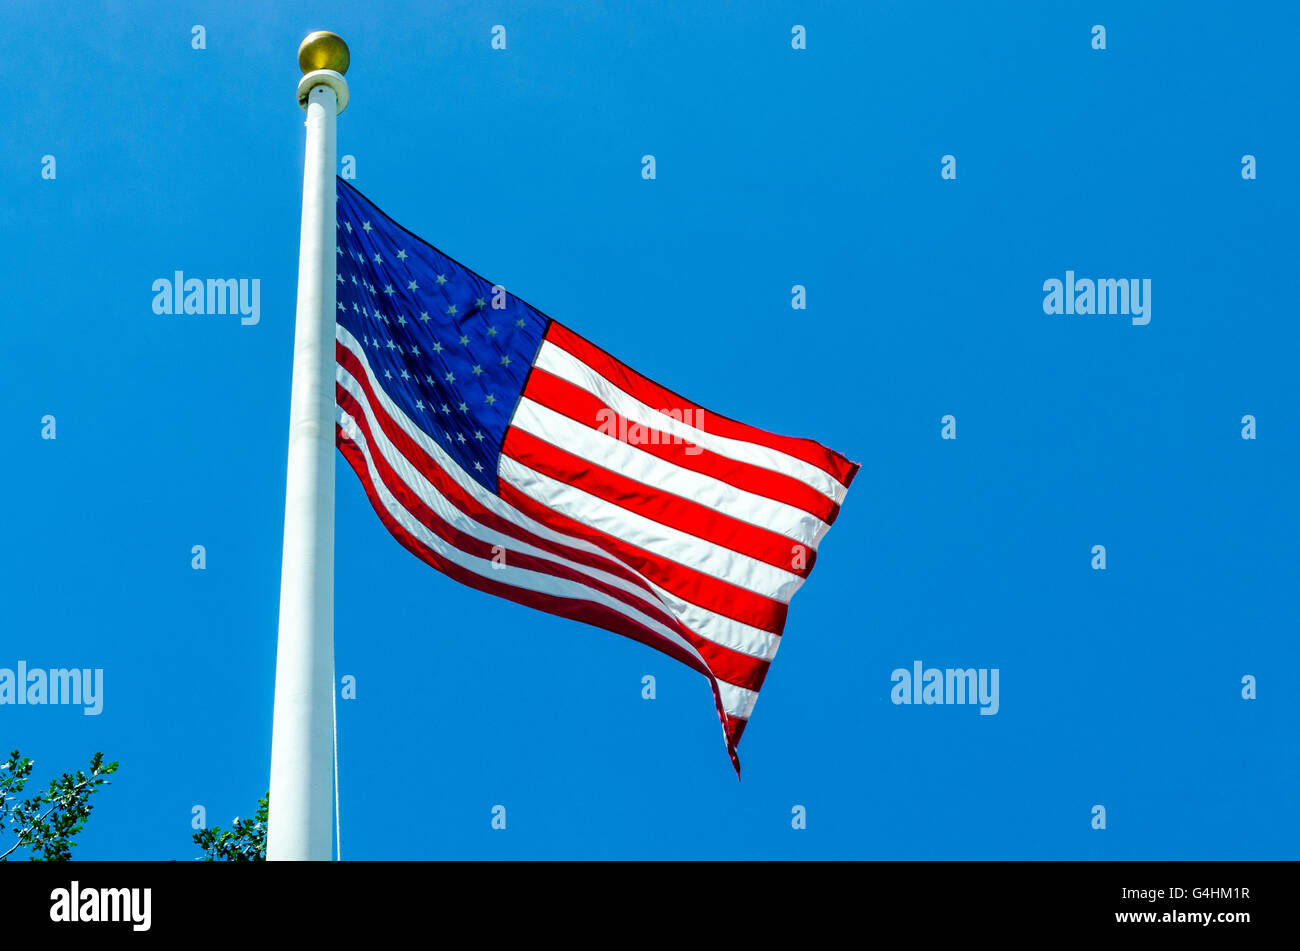 Brandissant un drapeau américain dans la brise Banque D'Images